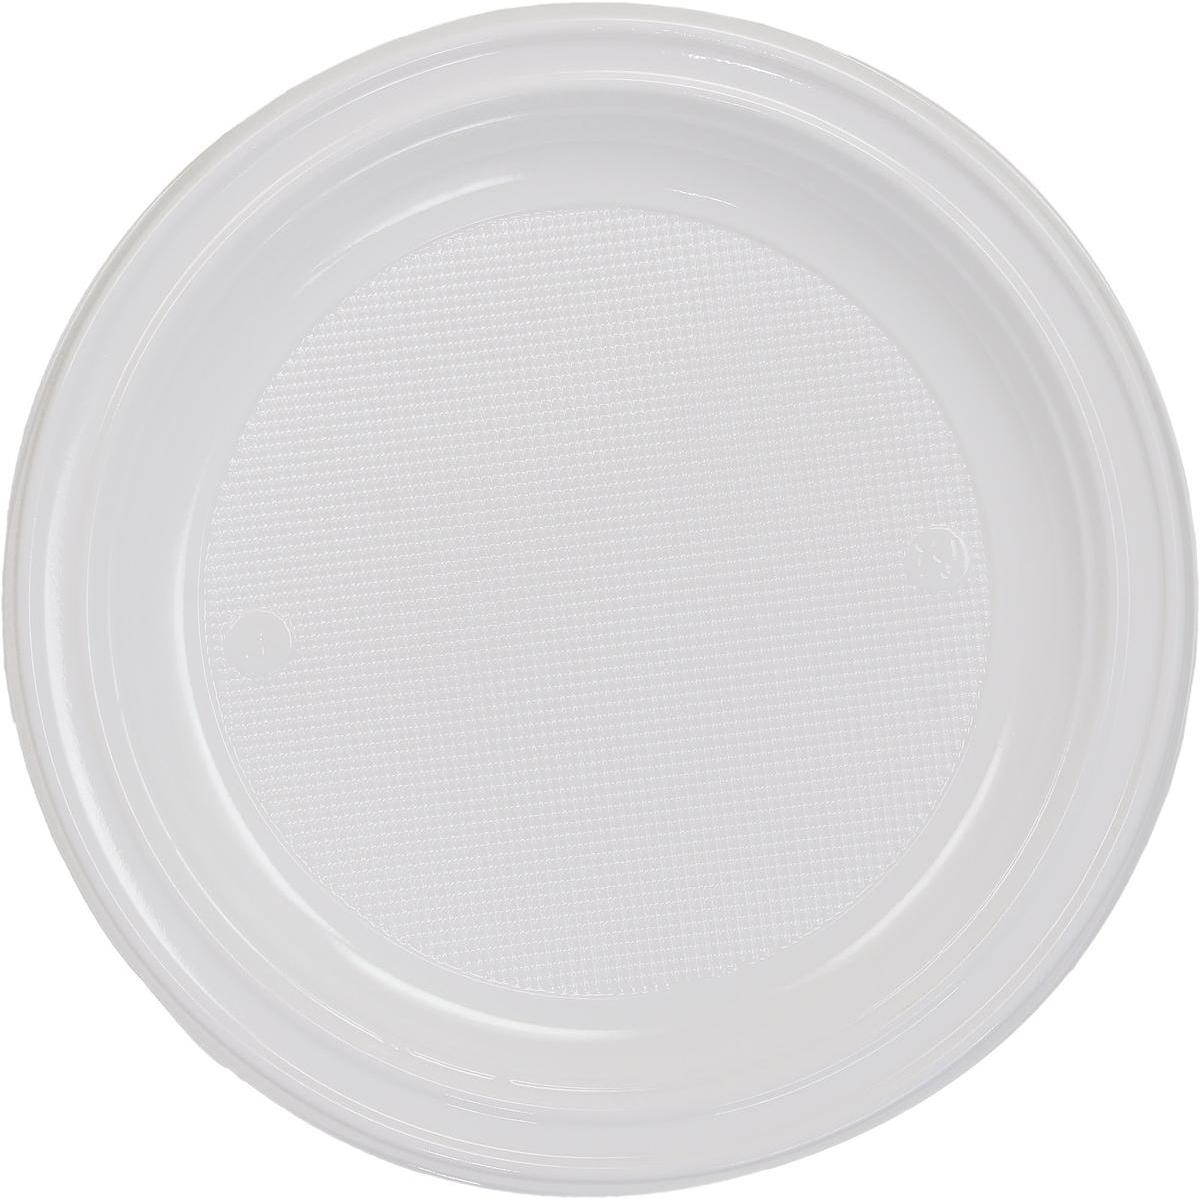 Lot de 100 assiettes Gappy en plastique - Blanc